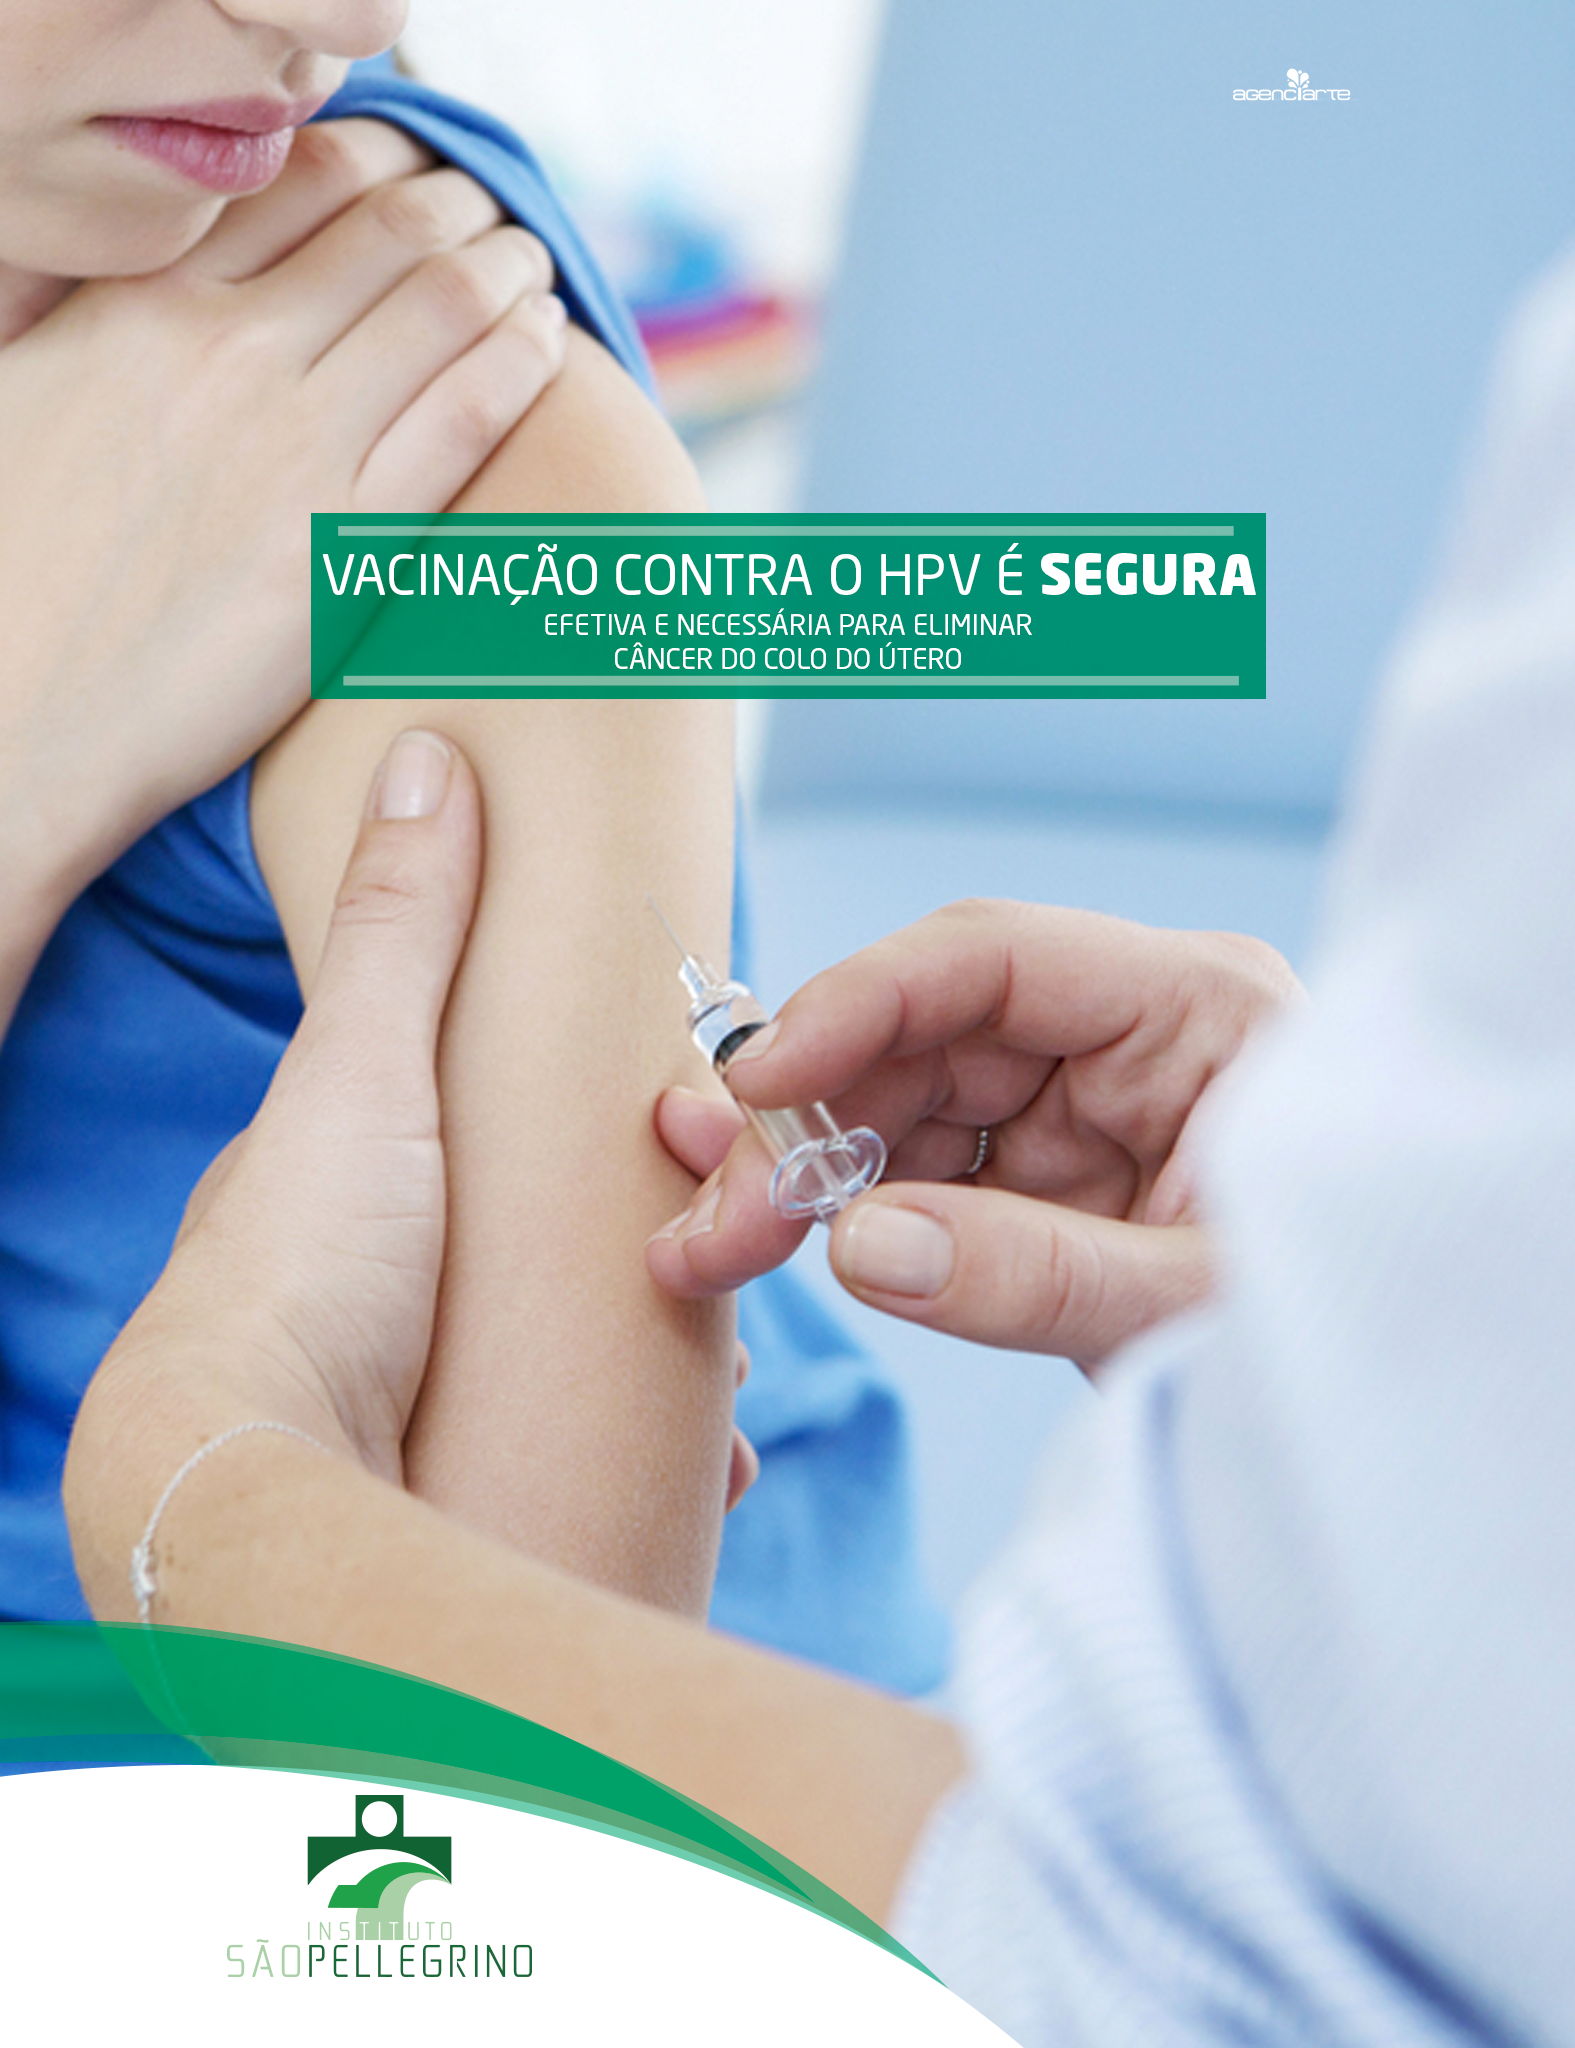 Vacinação contra o HPV é segura, efetiva e necessária para eliminar câncer do colo do útero